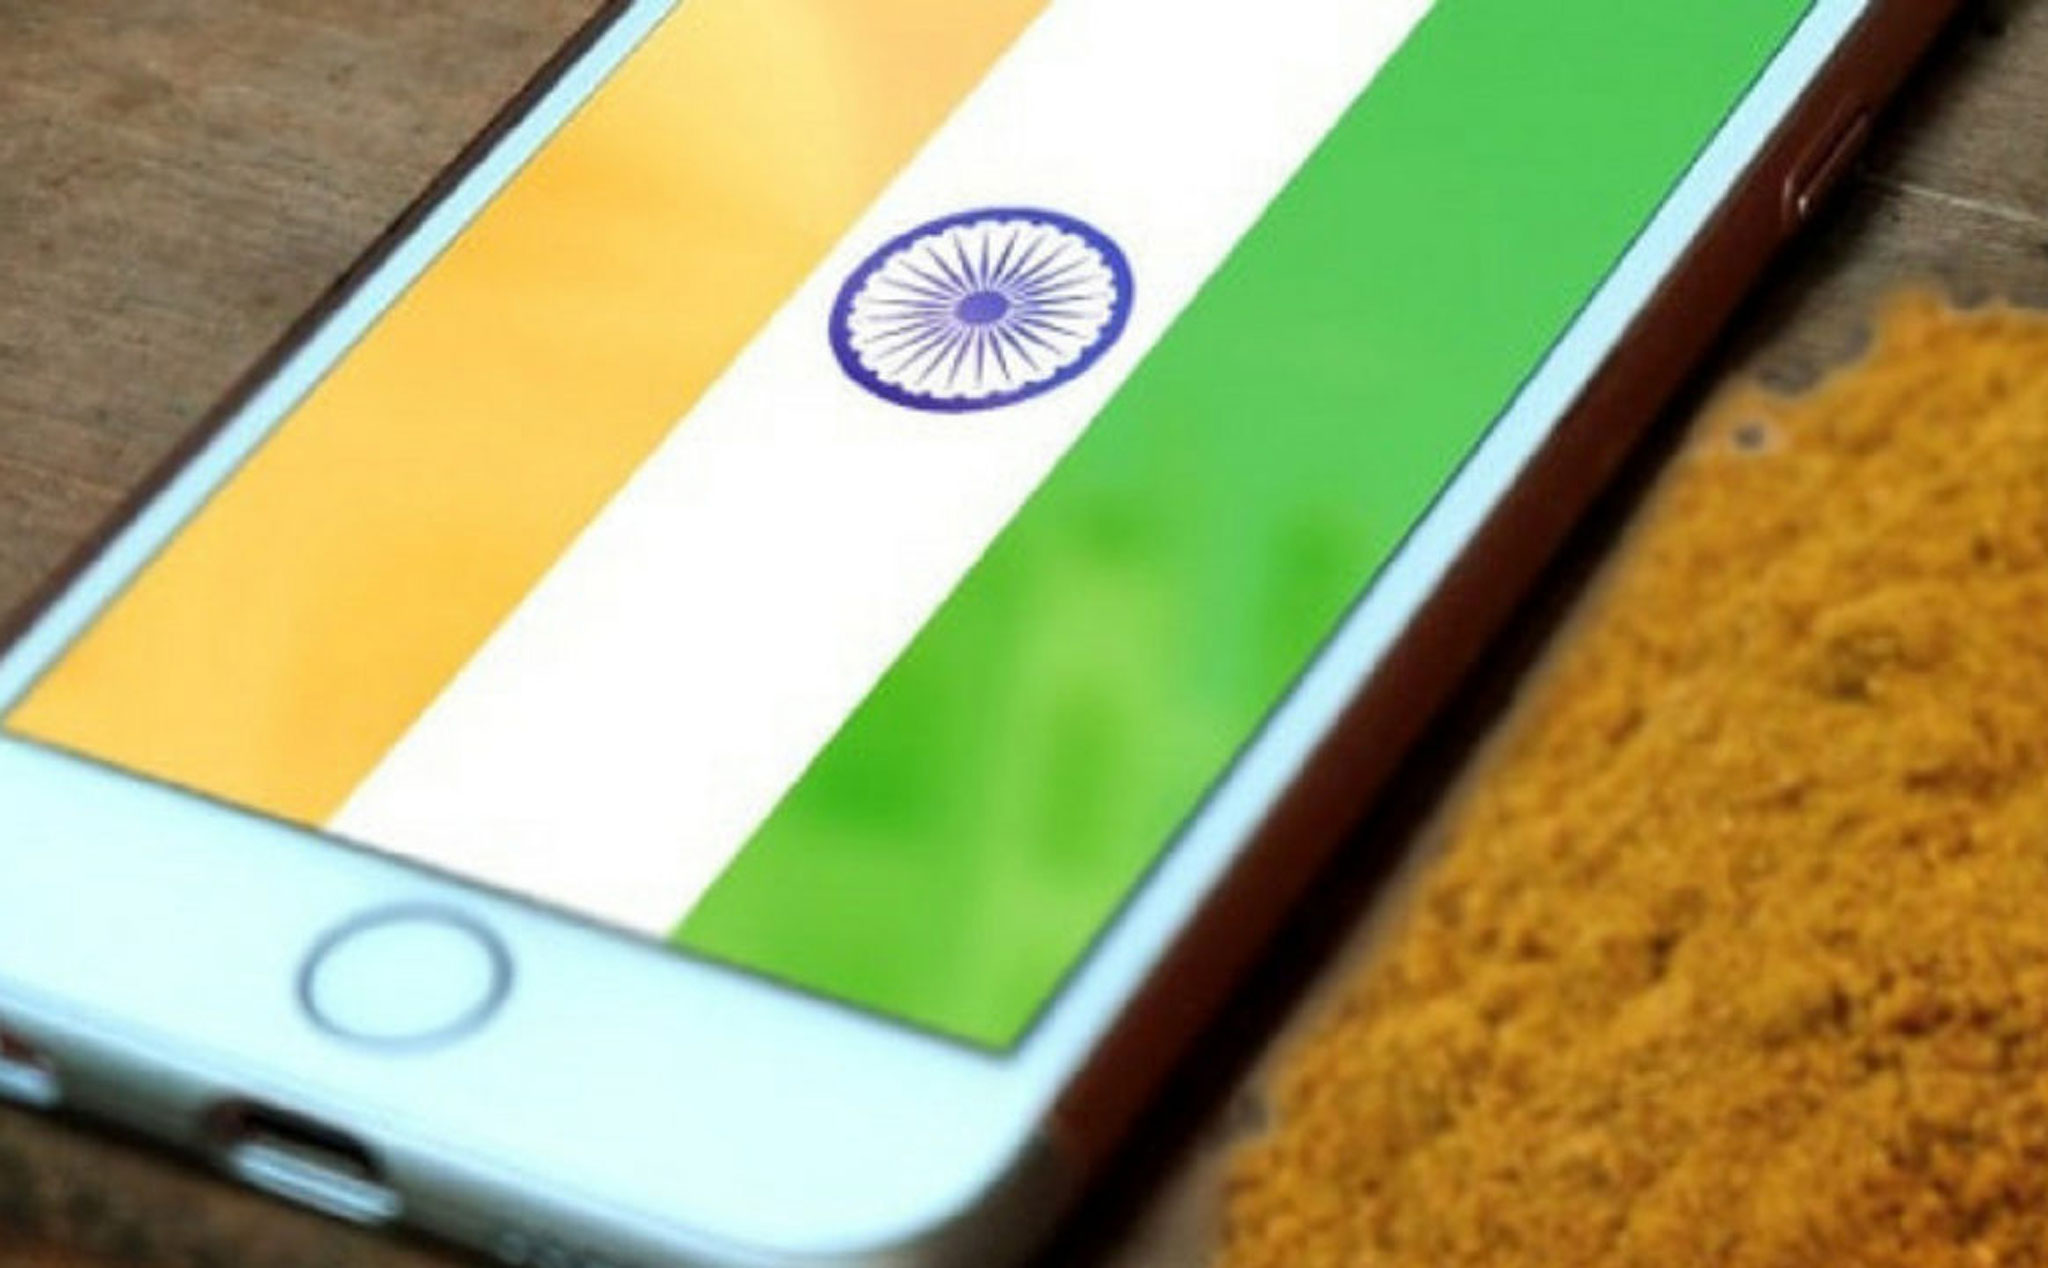 iPhone chiếm 75% thị phần smartphone cao cấp ở Ấn Độ trong quý 4 2019